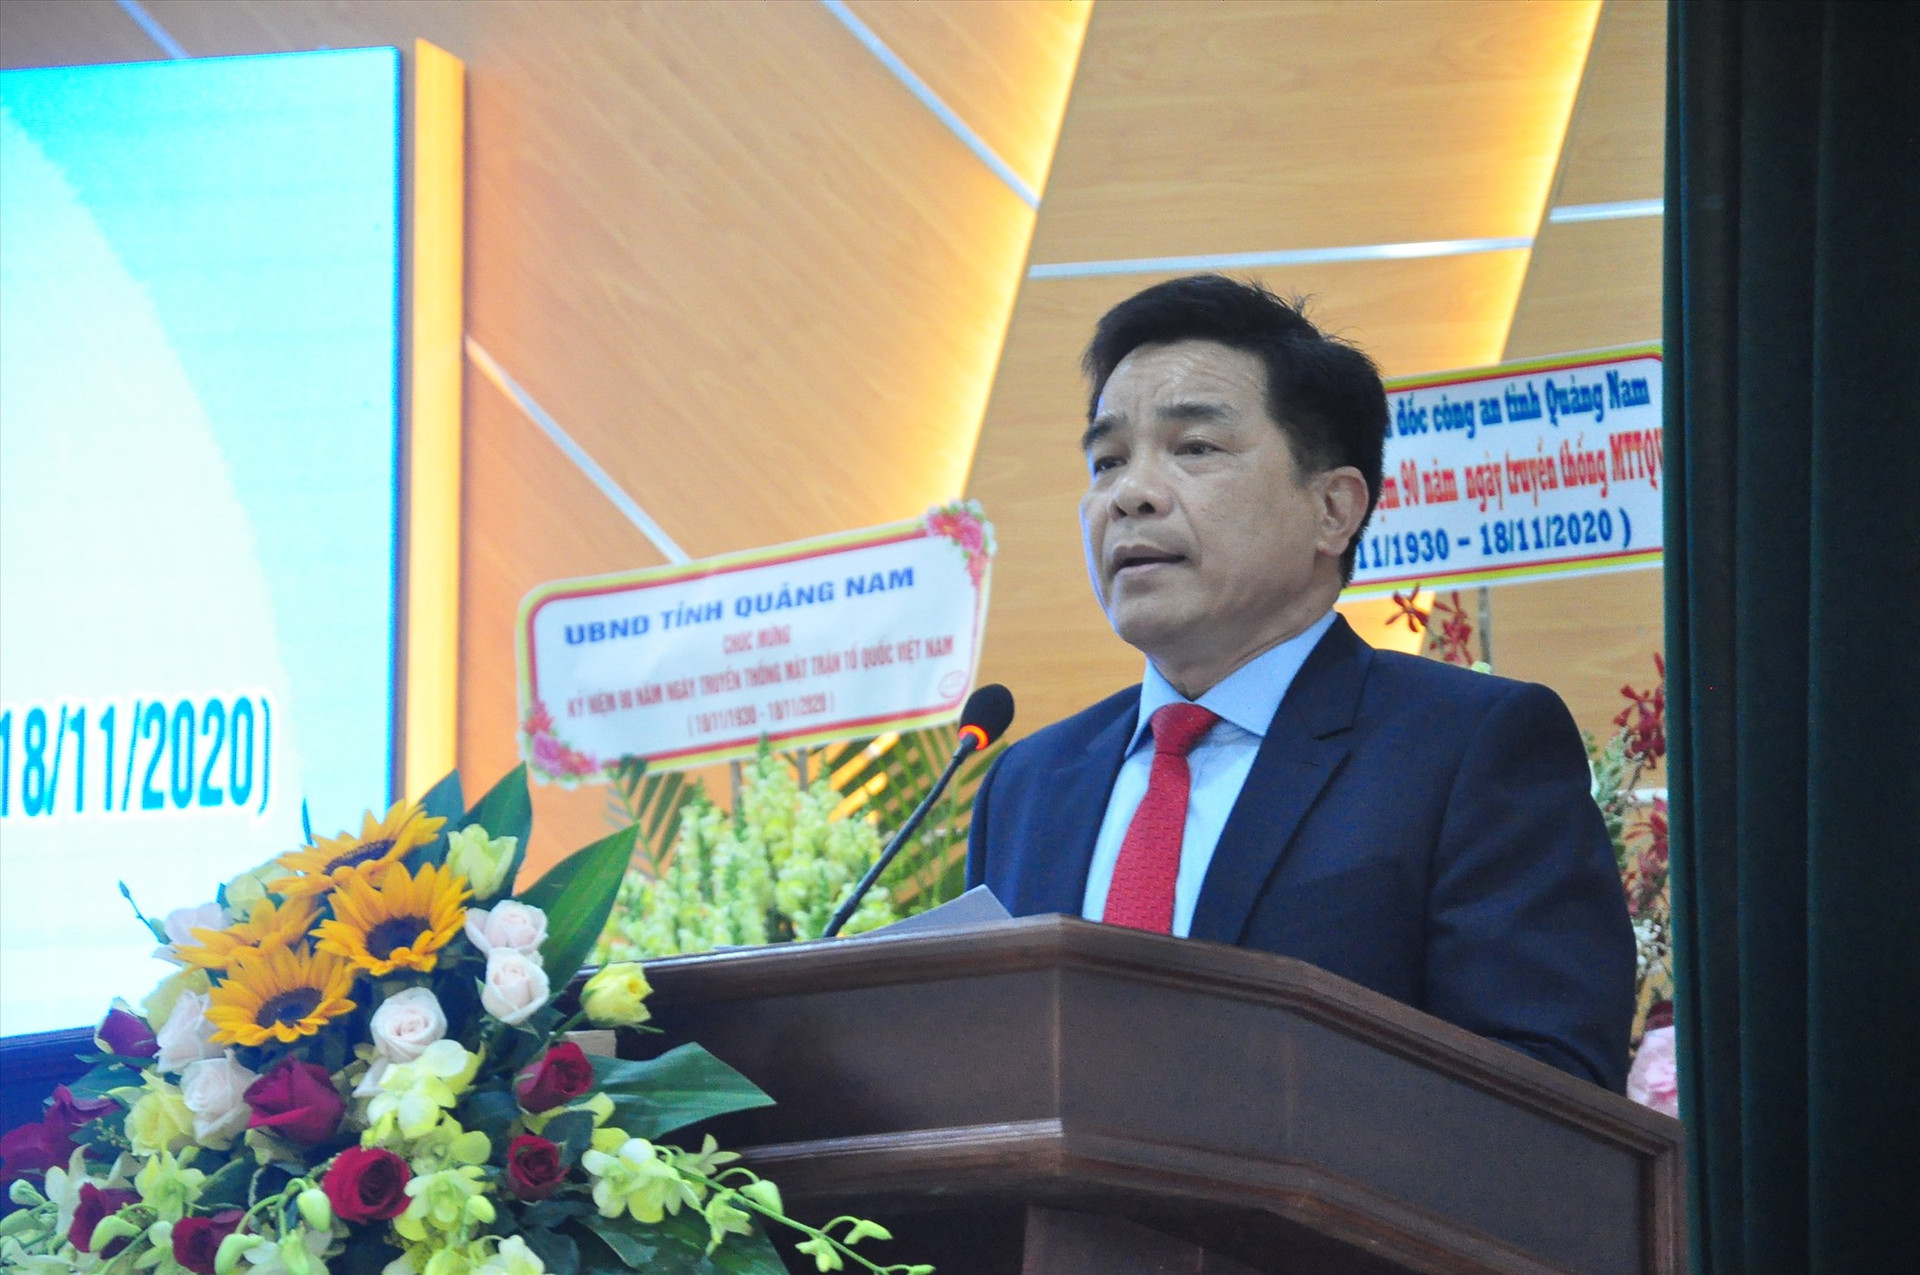 Phó Bí thư Thường trực Tỉnh ủy Lê Văn Dũng phát biểu tại buổi gặp mặt 90 năm truyền thống MTTQ Việt Nam. Ảnh: VINH ANH